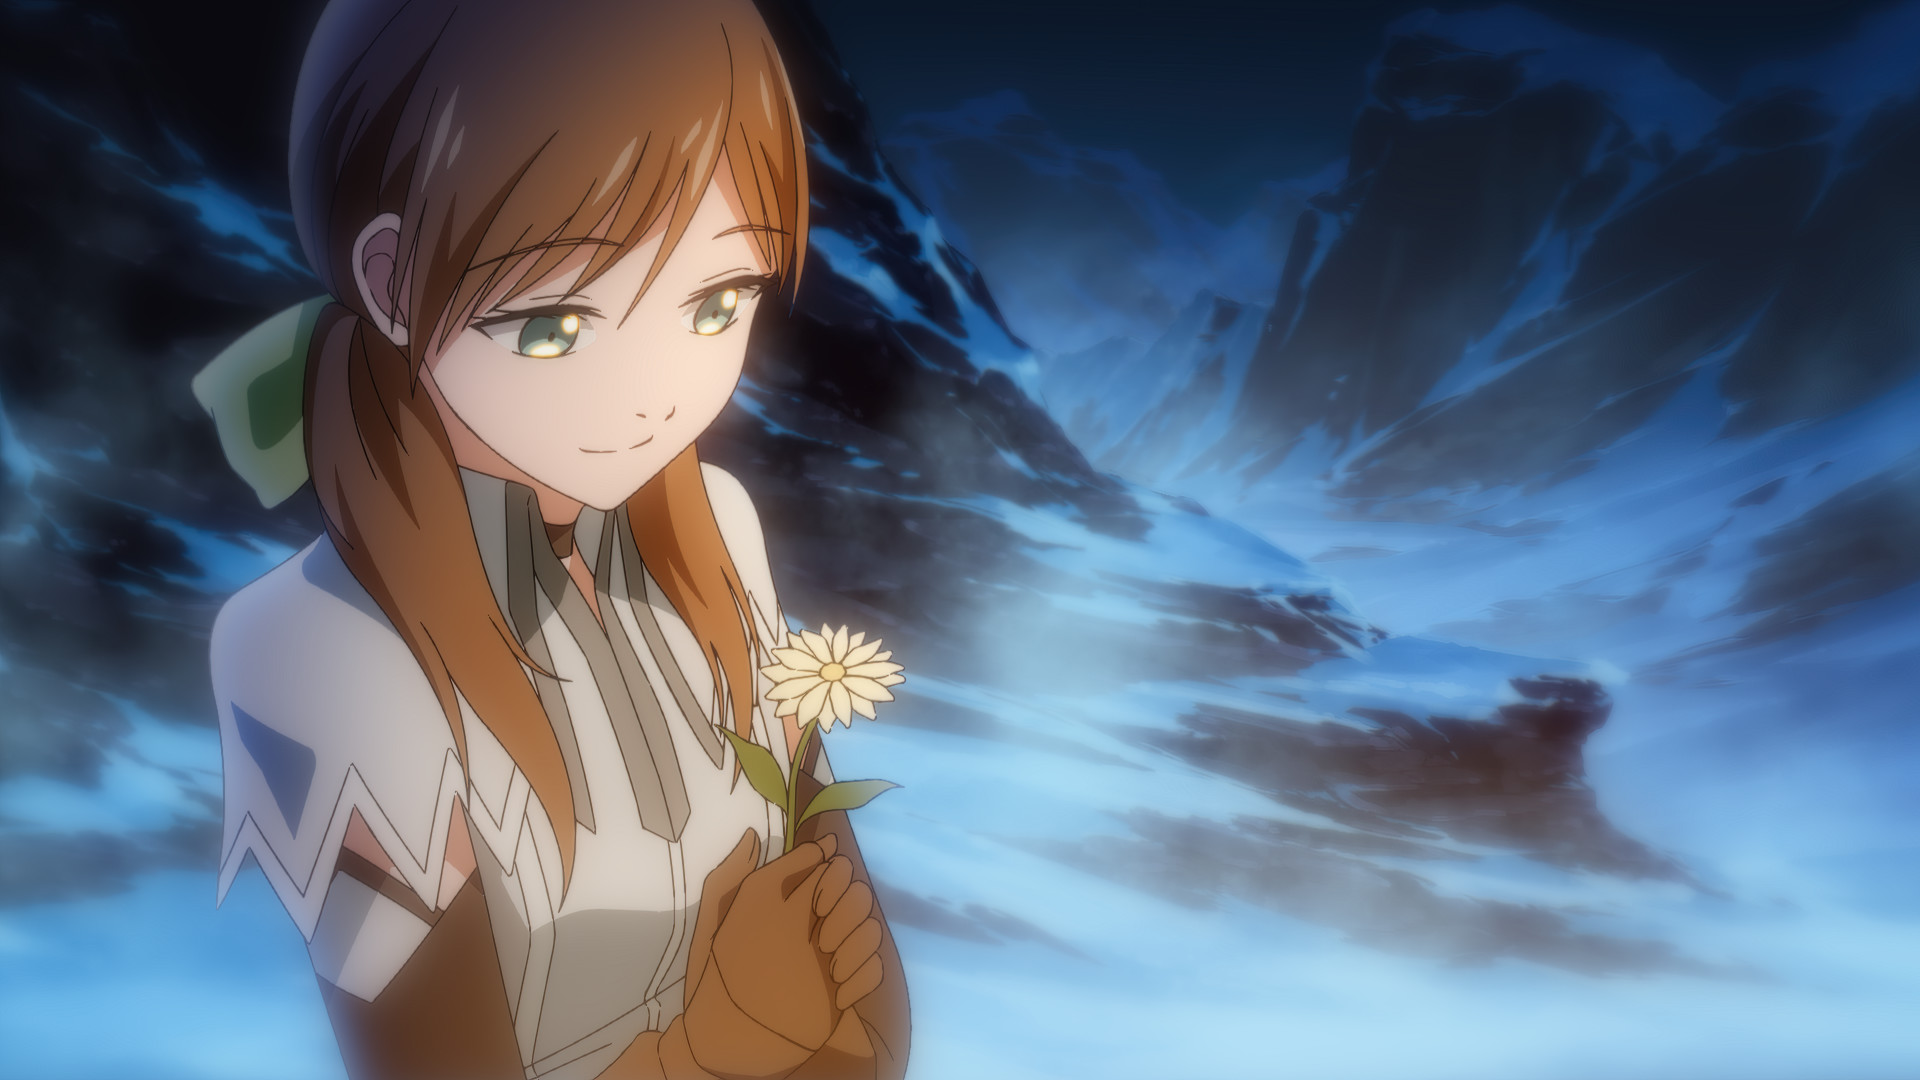 《光之童话 第二章(Light Fairytale Episode 2)》|英日文|免安装硬盘版